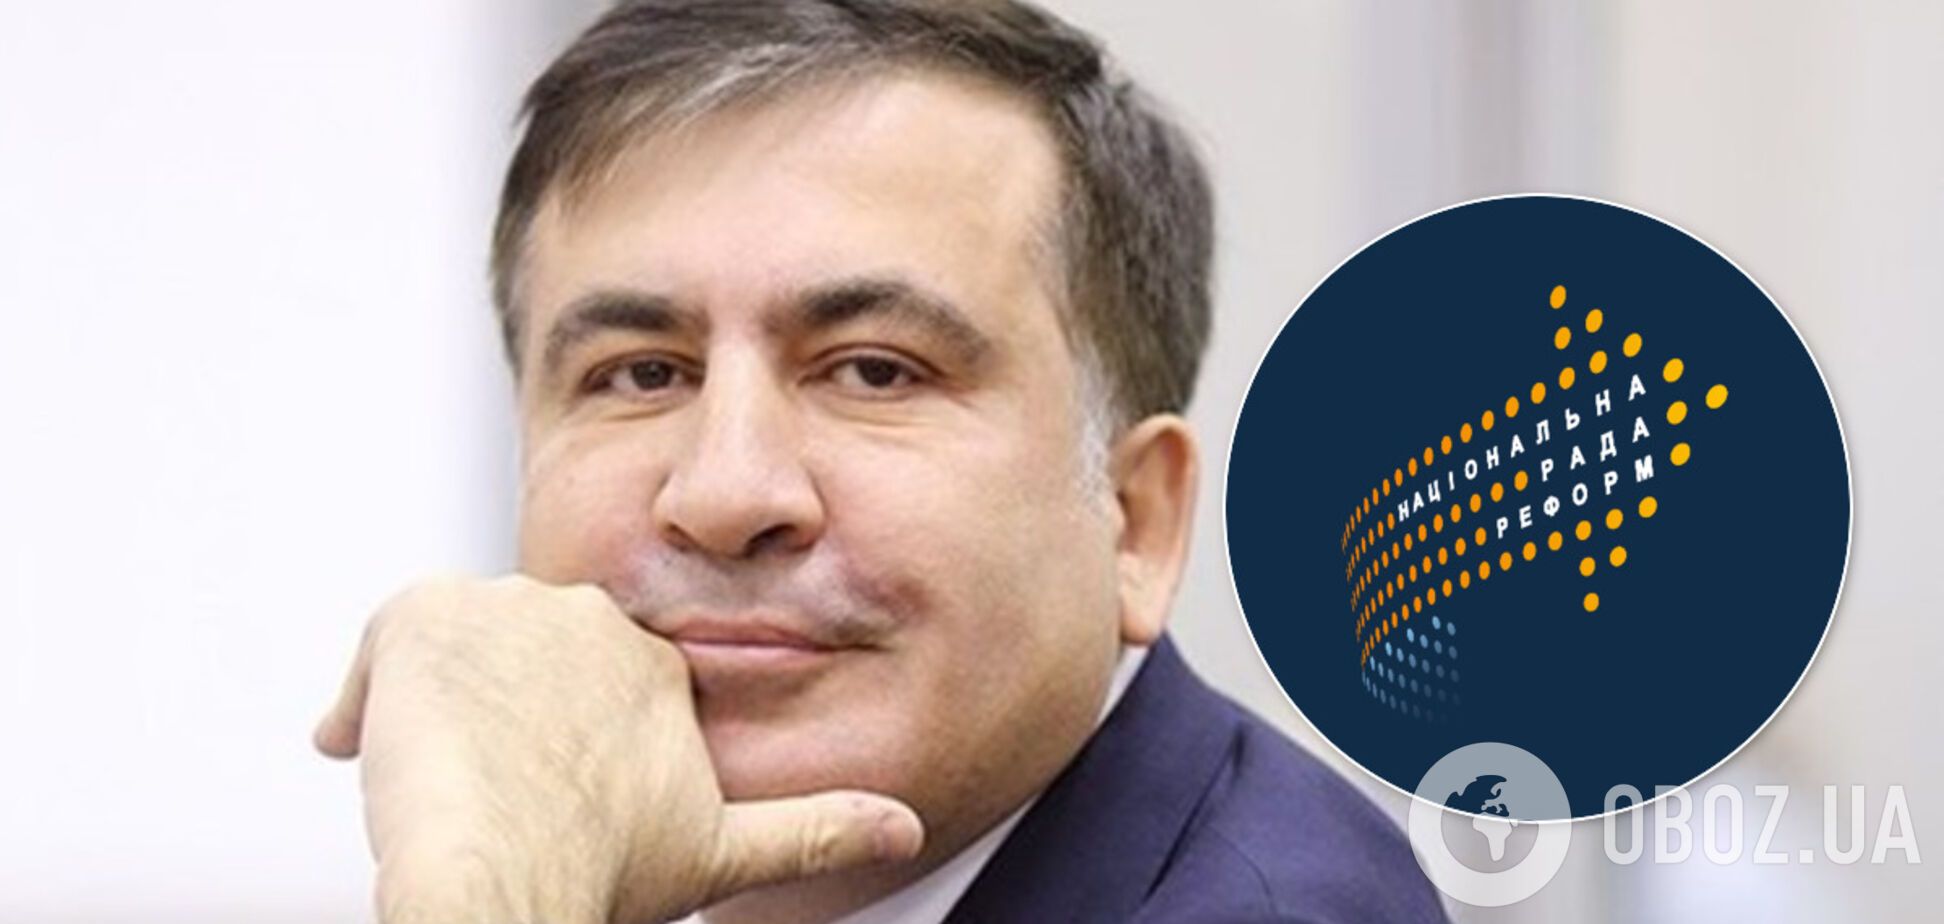 Саакашвили признался, чем будет заниматься на новой должности при Зеленскому